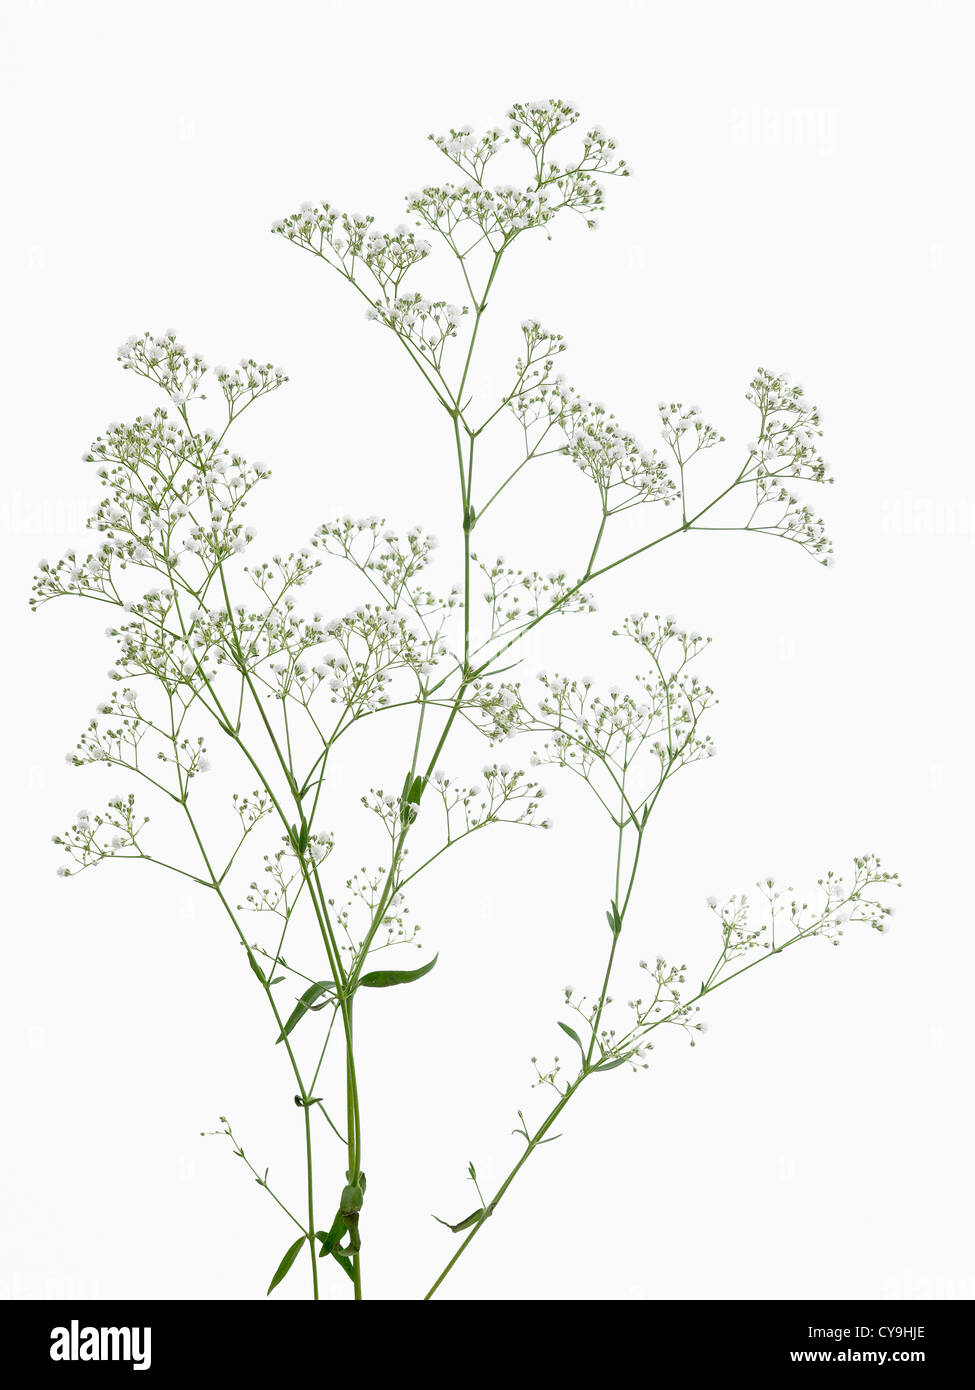 Steli di fioritura bimbo di respiro, Gypsophila paniculata 'Million stelle', contro uno sfondo bianco Foto Stock